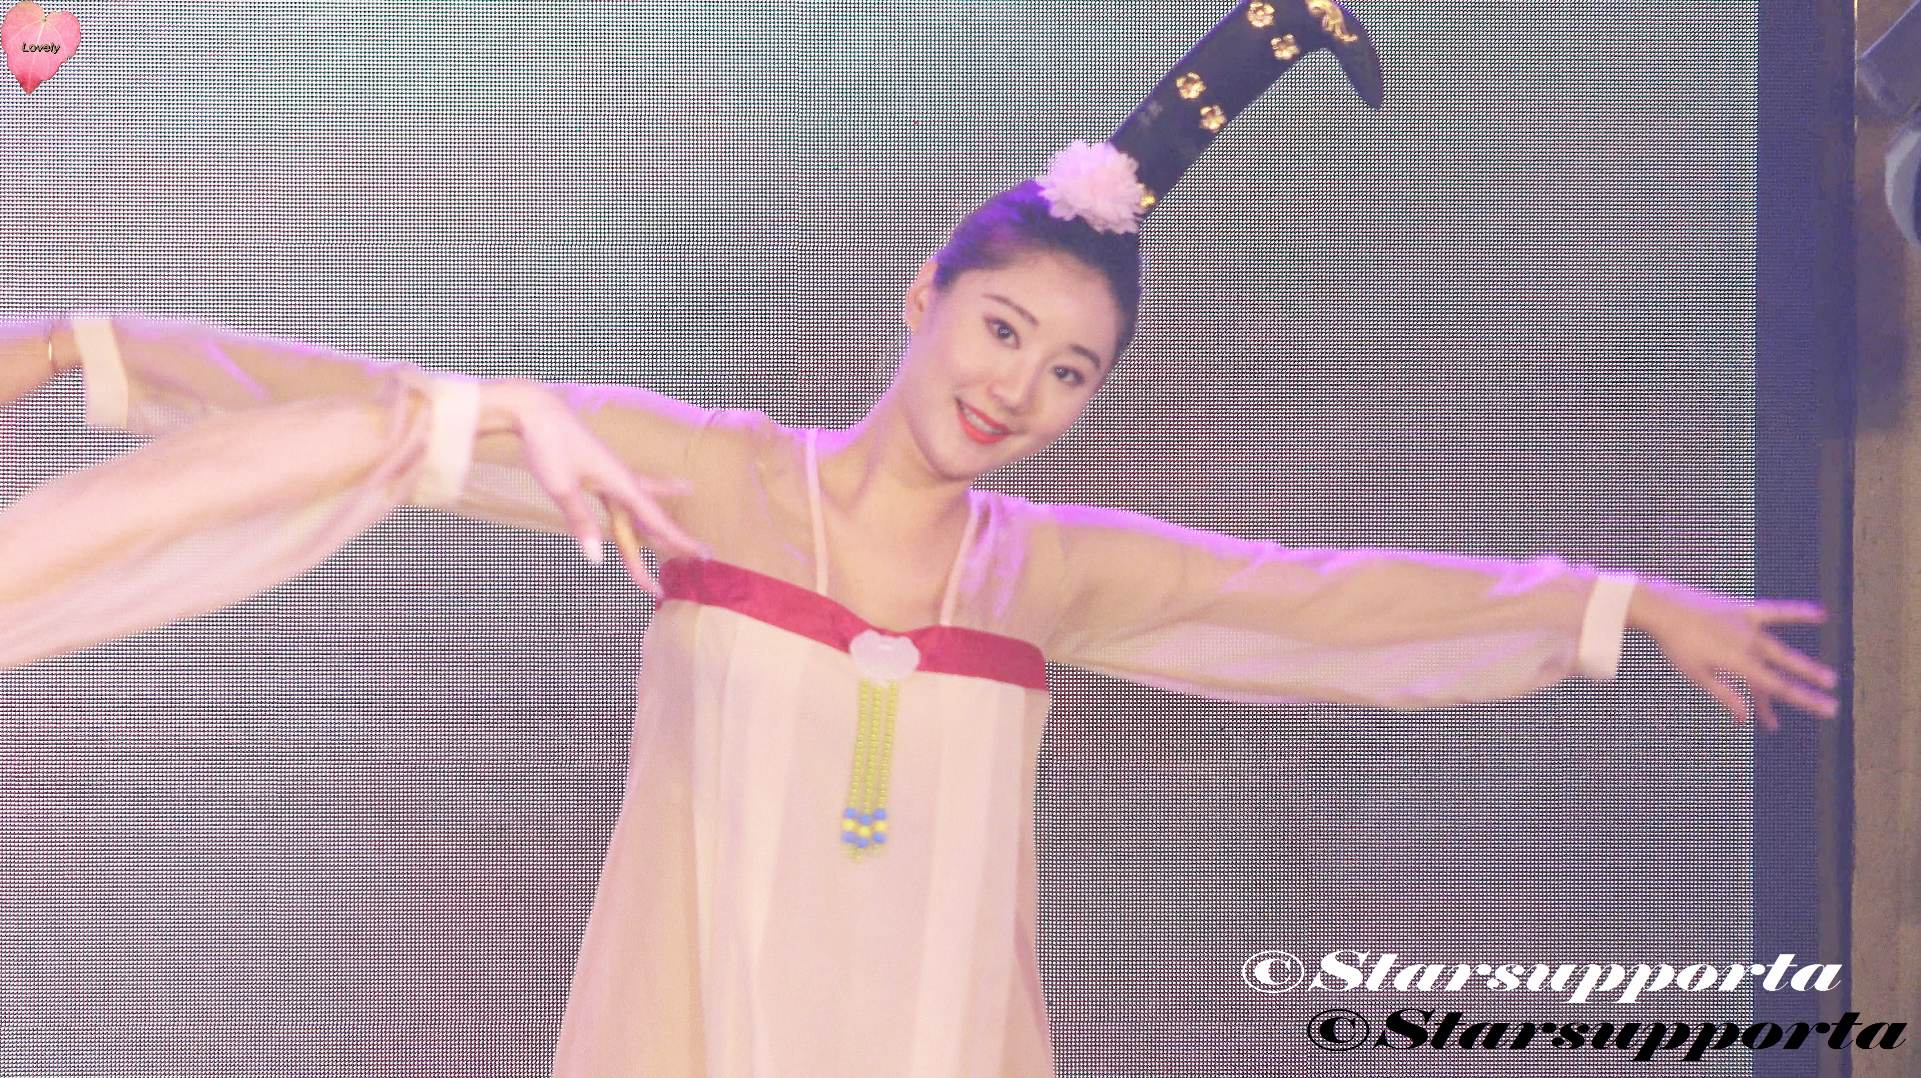 20200103 第21屆環球華裔小姐全國總決賽 KOL時尚女神 - 05 歌唱舞蹈表演 @ 深圳福田福朋喜來登酒店 